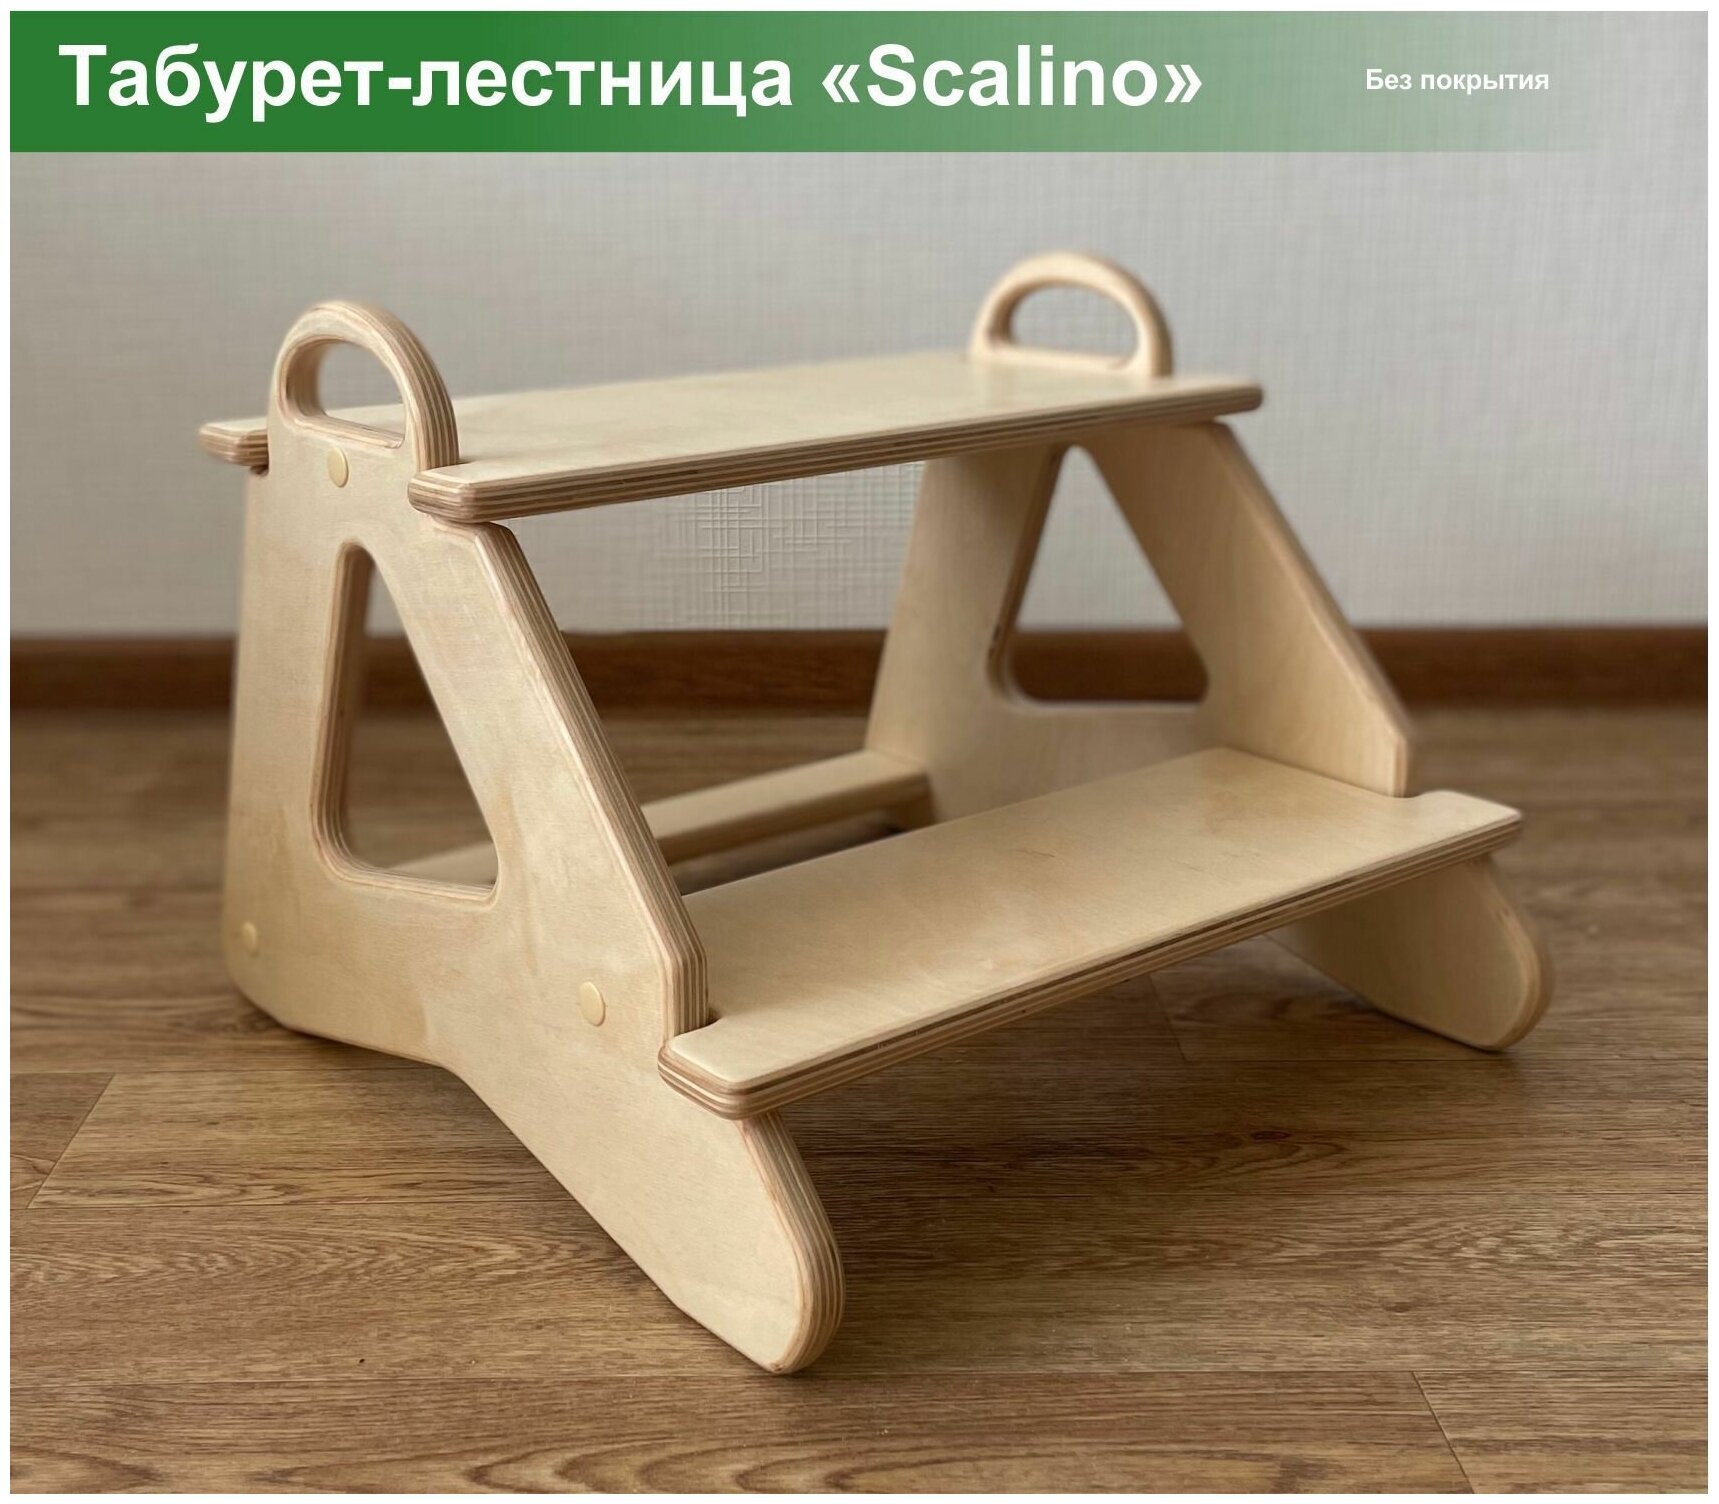 Табурет стремянка детская Scalino, для кухни, подставка под ноги. Шлифованный, без покрытия. - фотография № 1